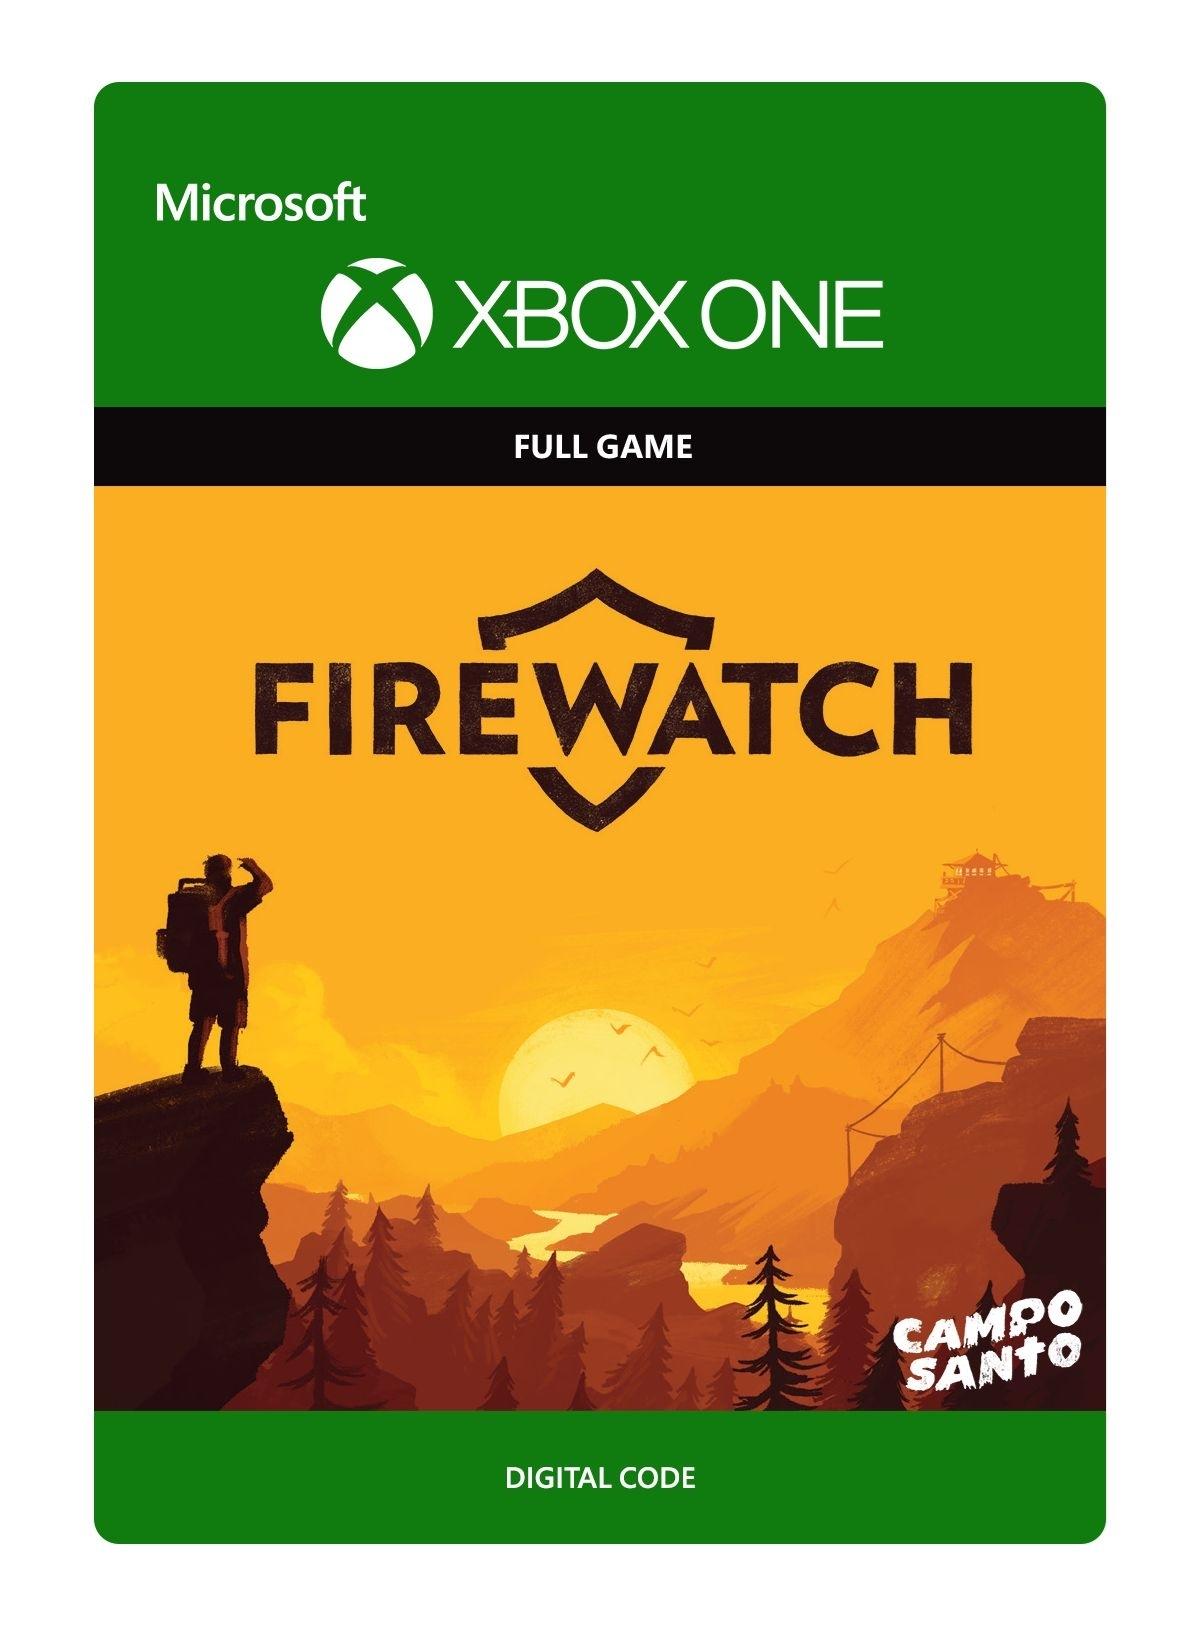 Firewatch - Xbox One - Full Game | 6JN-00006 (a0e6879c-f411-4e94-ad63-d9f2946ce93b)